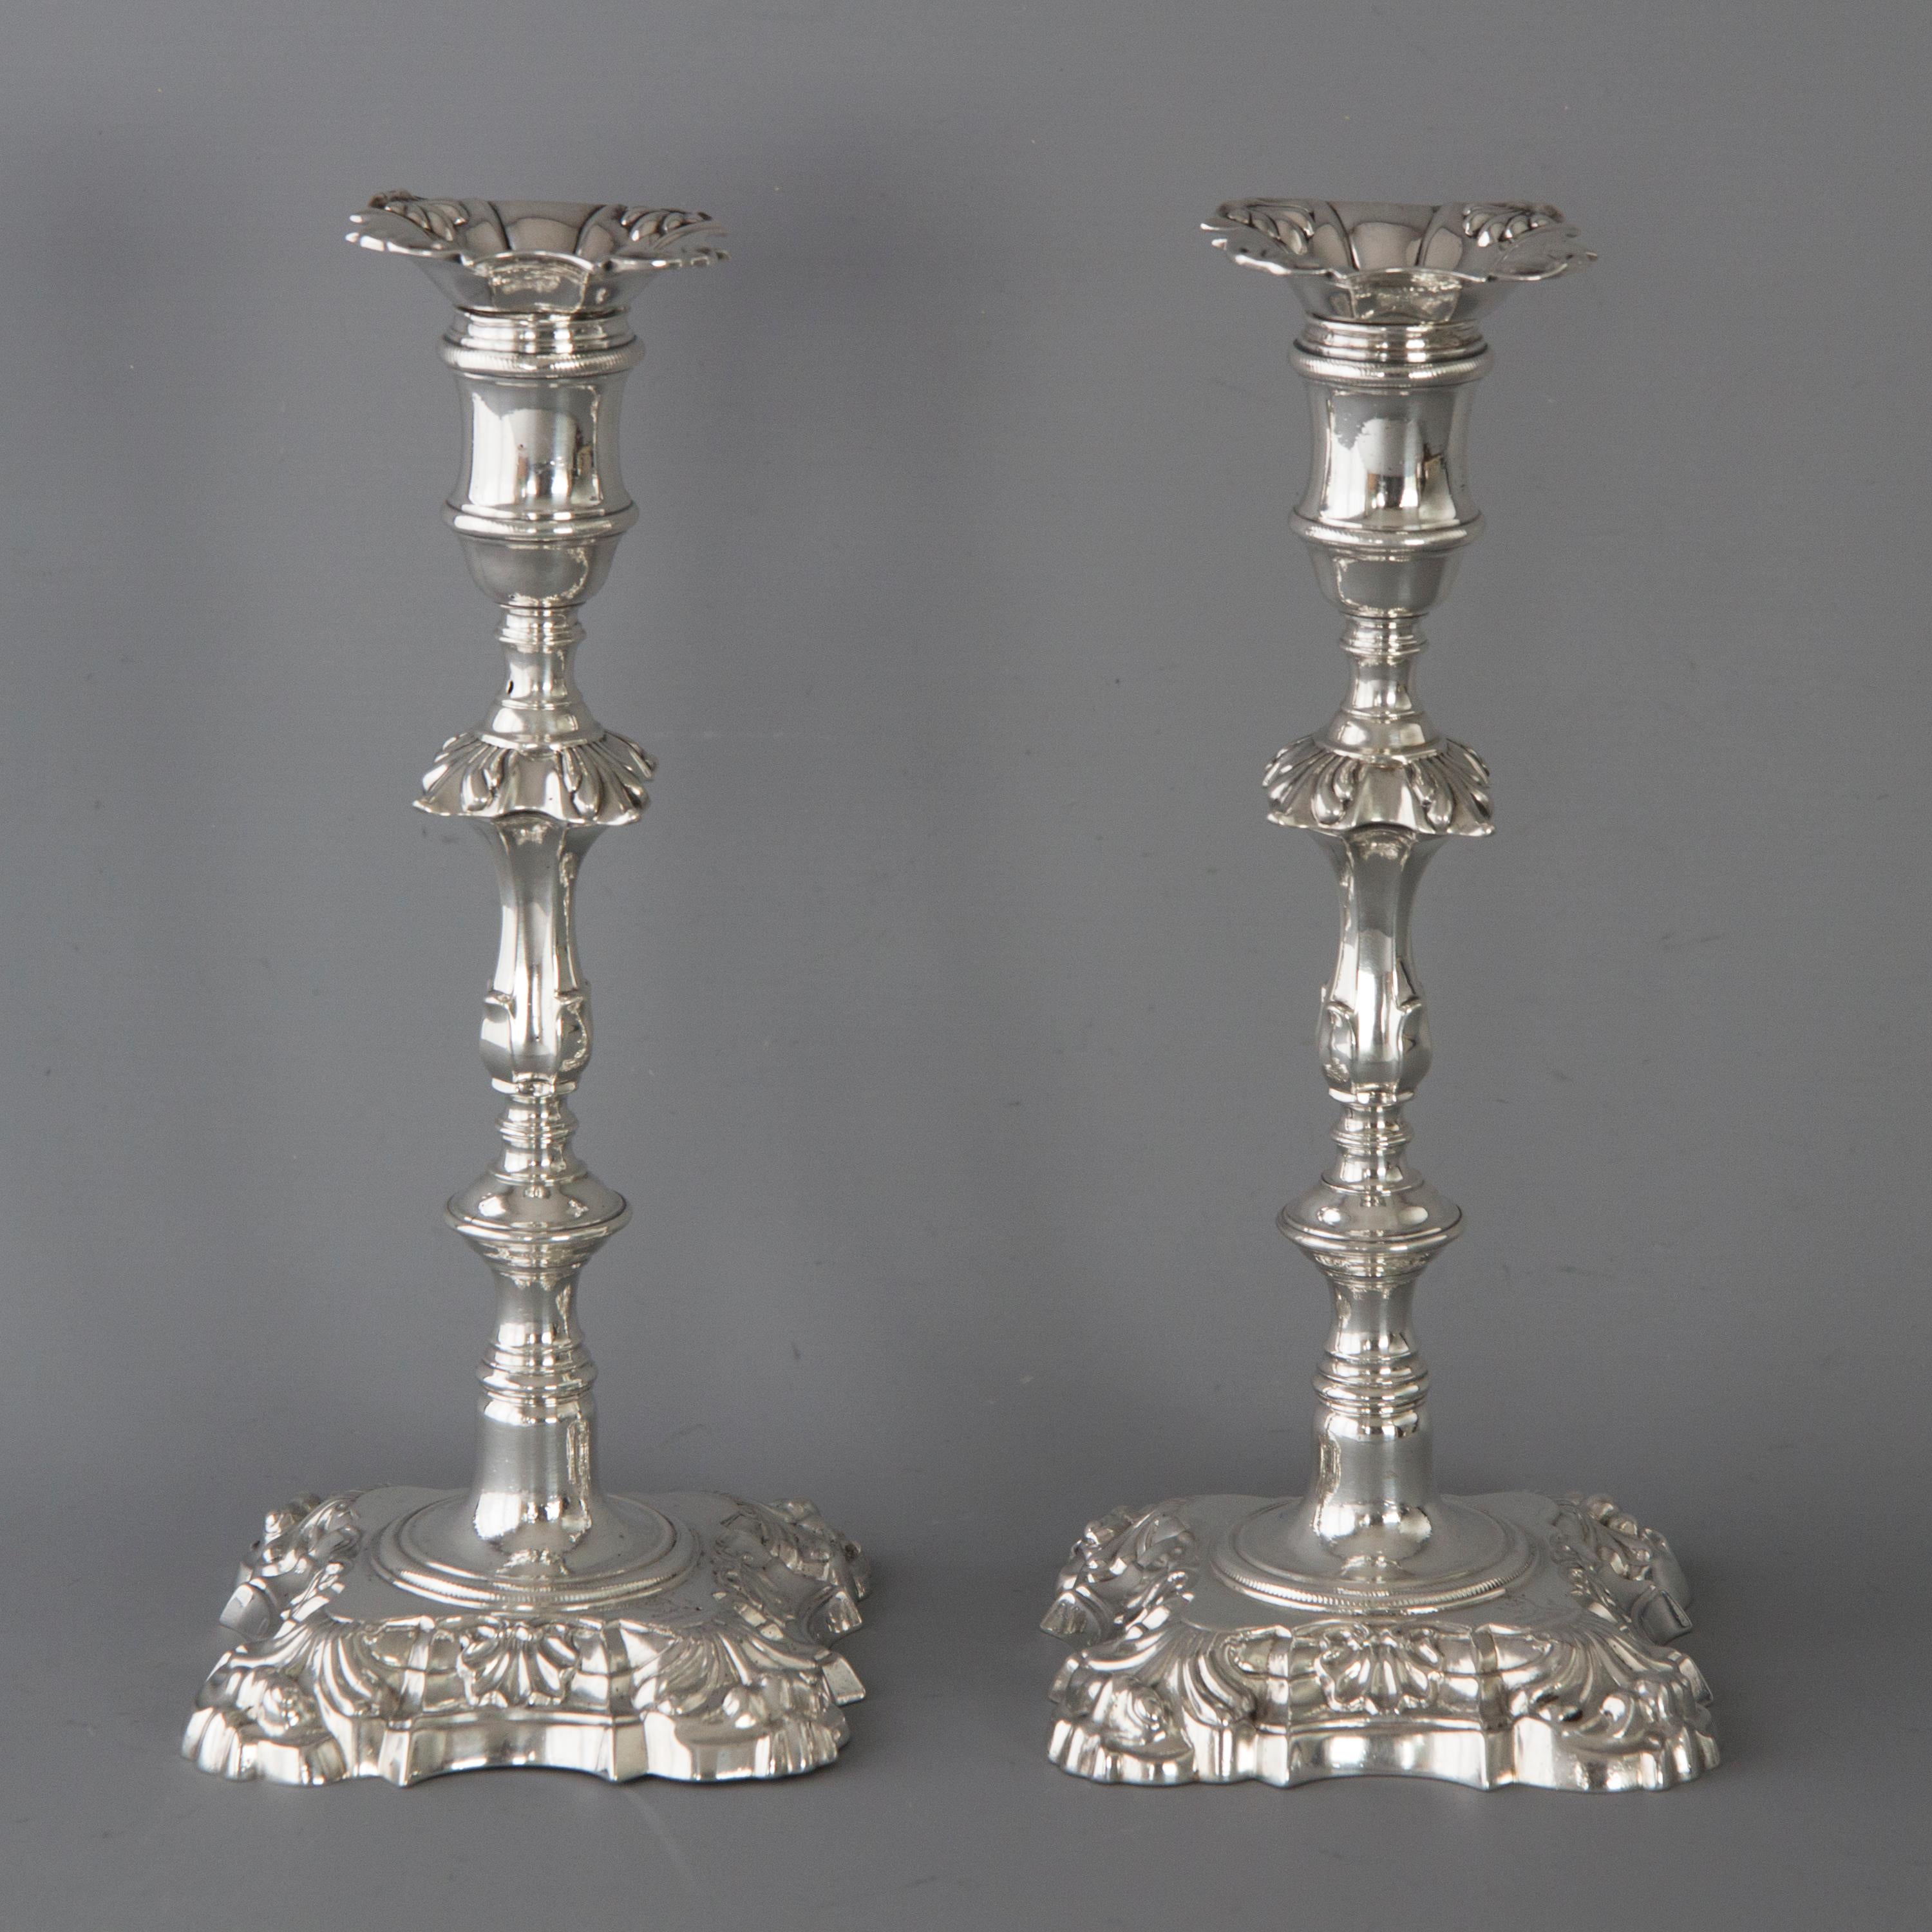 Une très bonne paire de chandeliers de table en argent moulé de George III à décor de coquilles et de volutes sur une base de forme carrée. La tige est dotée d'un pommeau circulaire et d'un pommeau rectangulaire cannelé. Décoration en torsade de